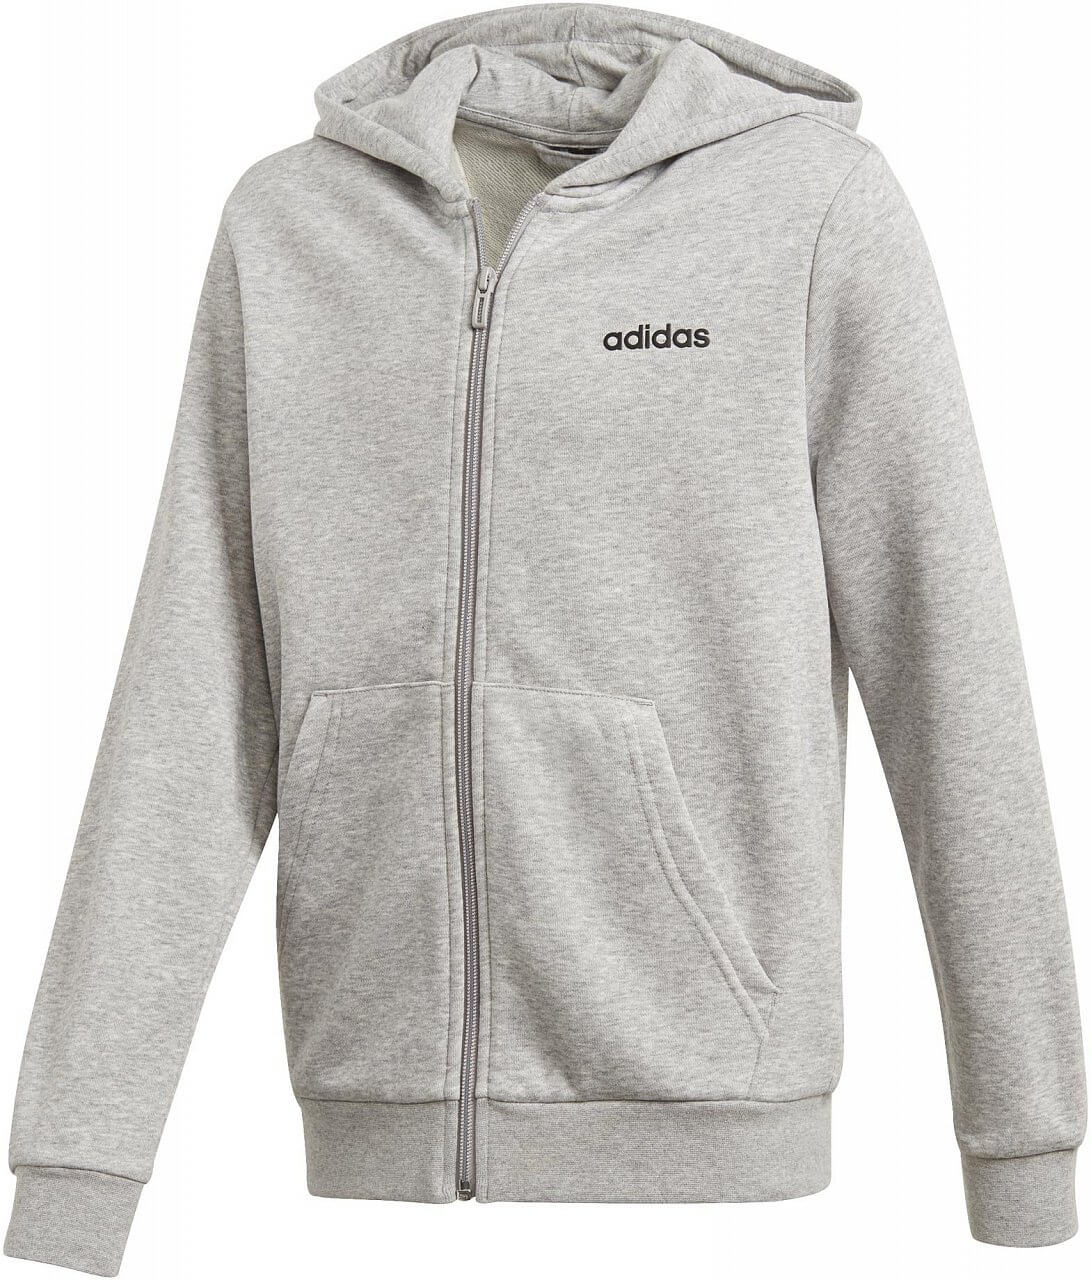 Sweatshirts adidas Youth Boys Essentials Linear Fullzip Hoodie